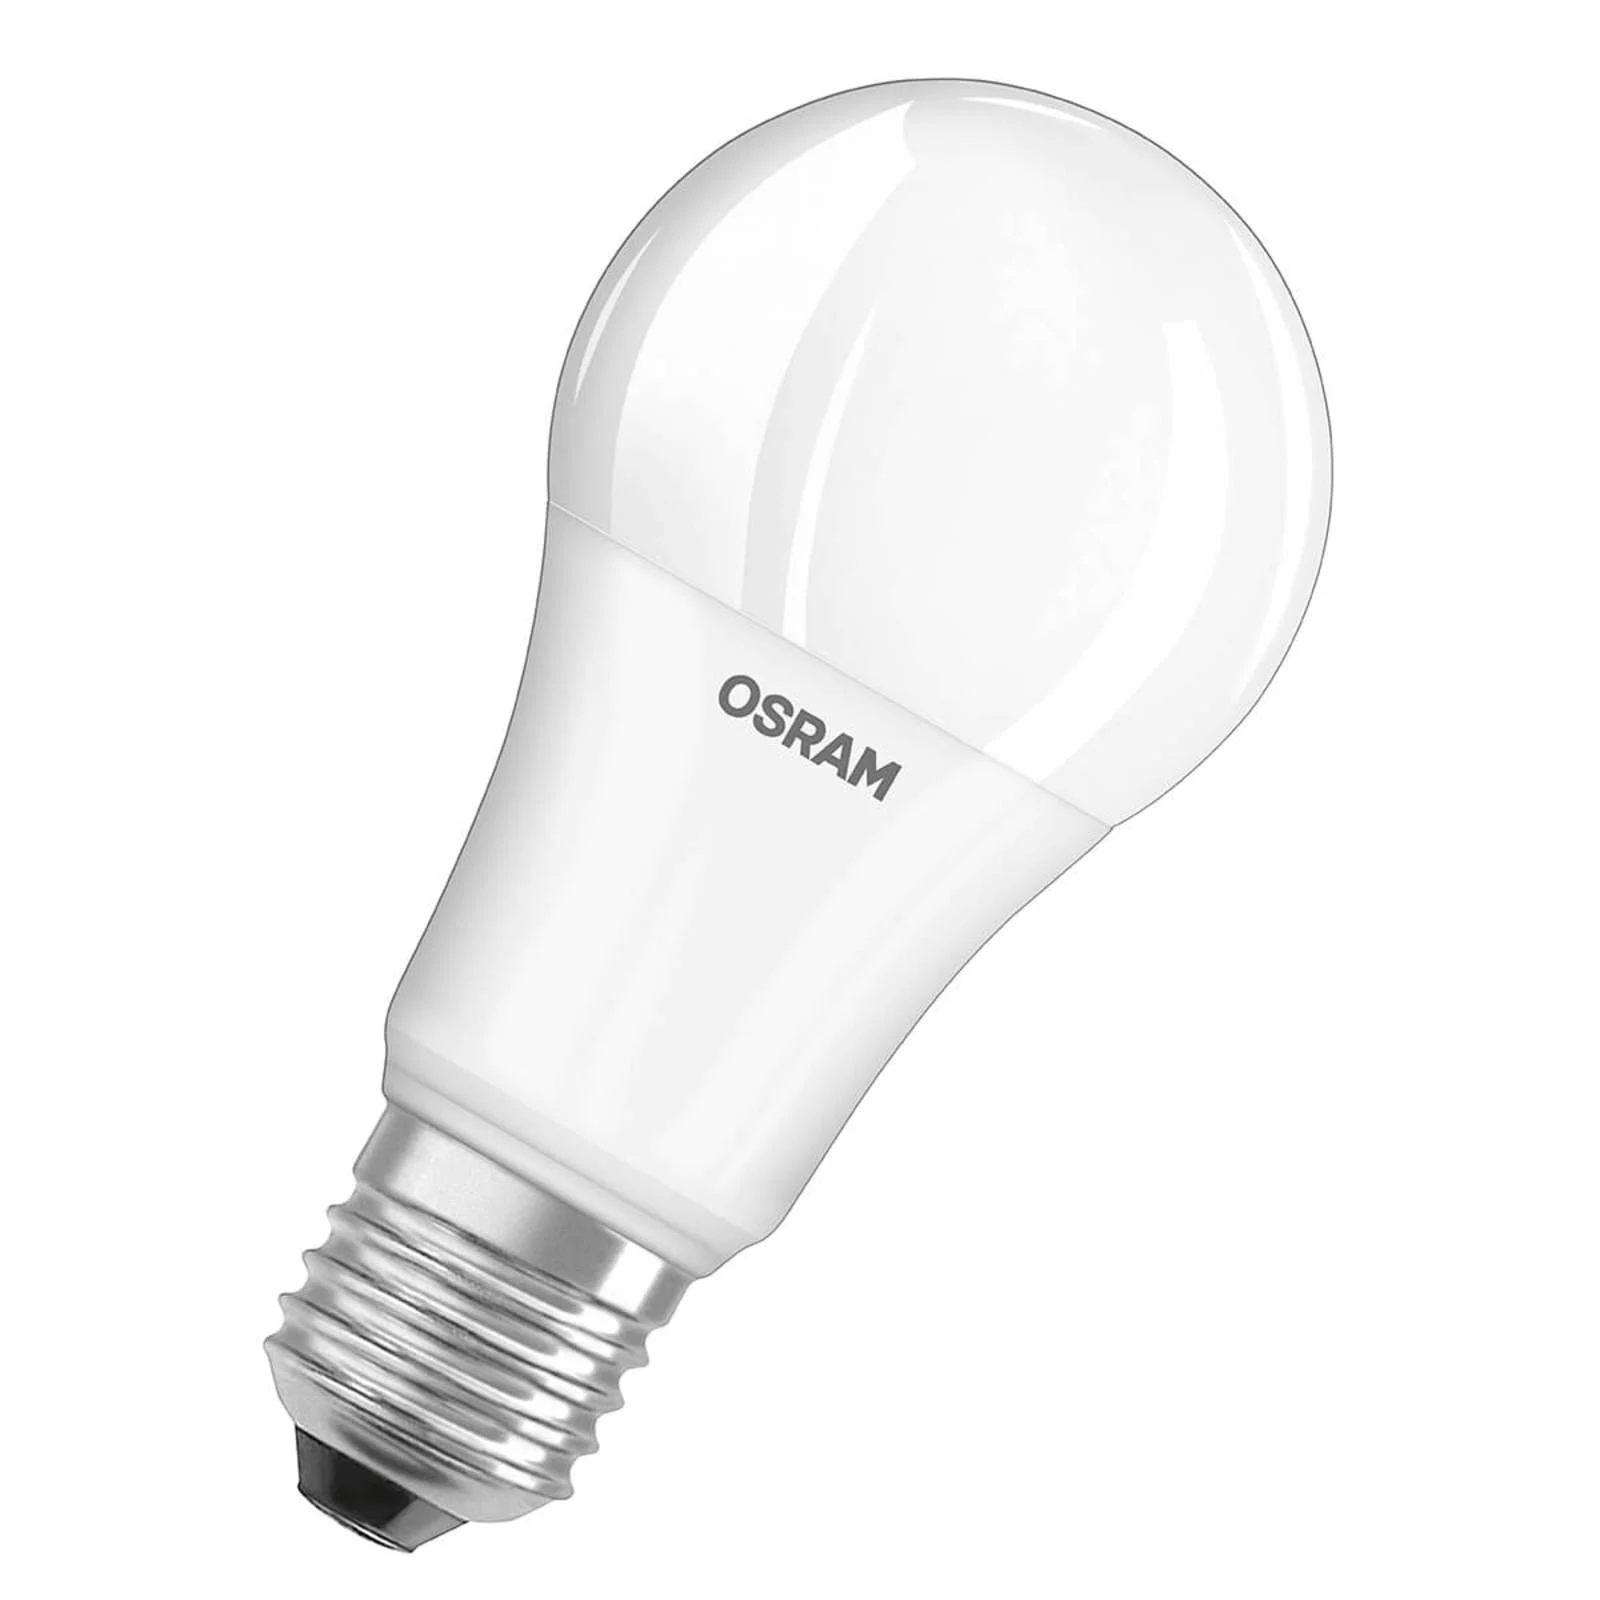 LED-Lampe E27 14W, warmweiß, 3er-Set günstig online kaufen